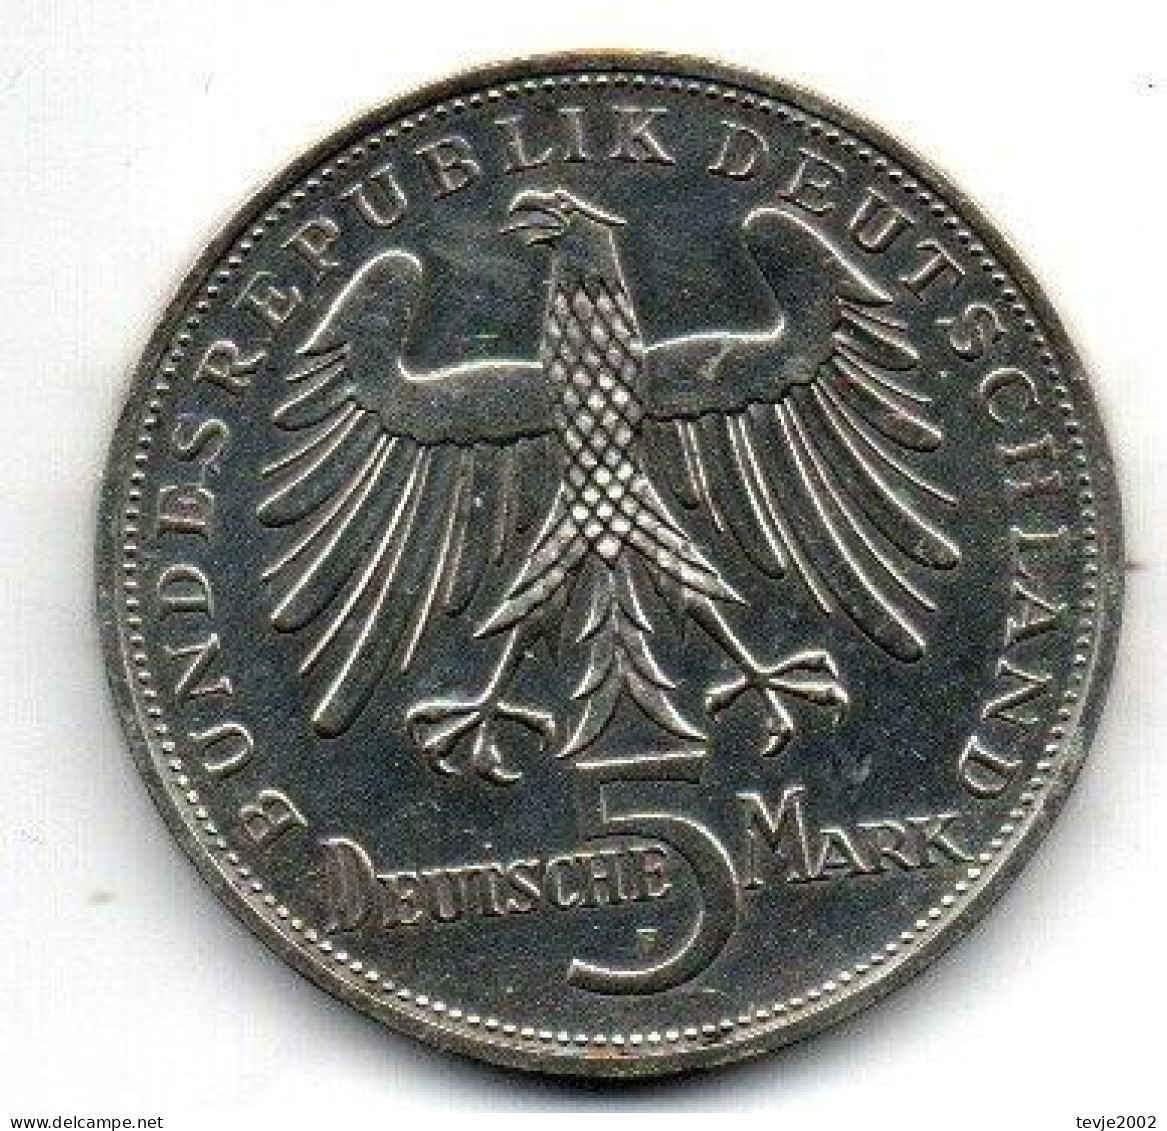 Bundesrepublik 1955 - 5 DM - Schiller - Sehr Gut Erhalten - 5 Mark